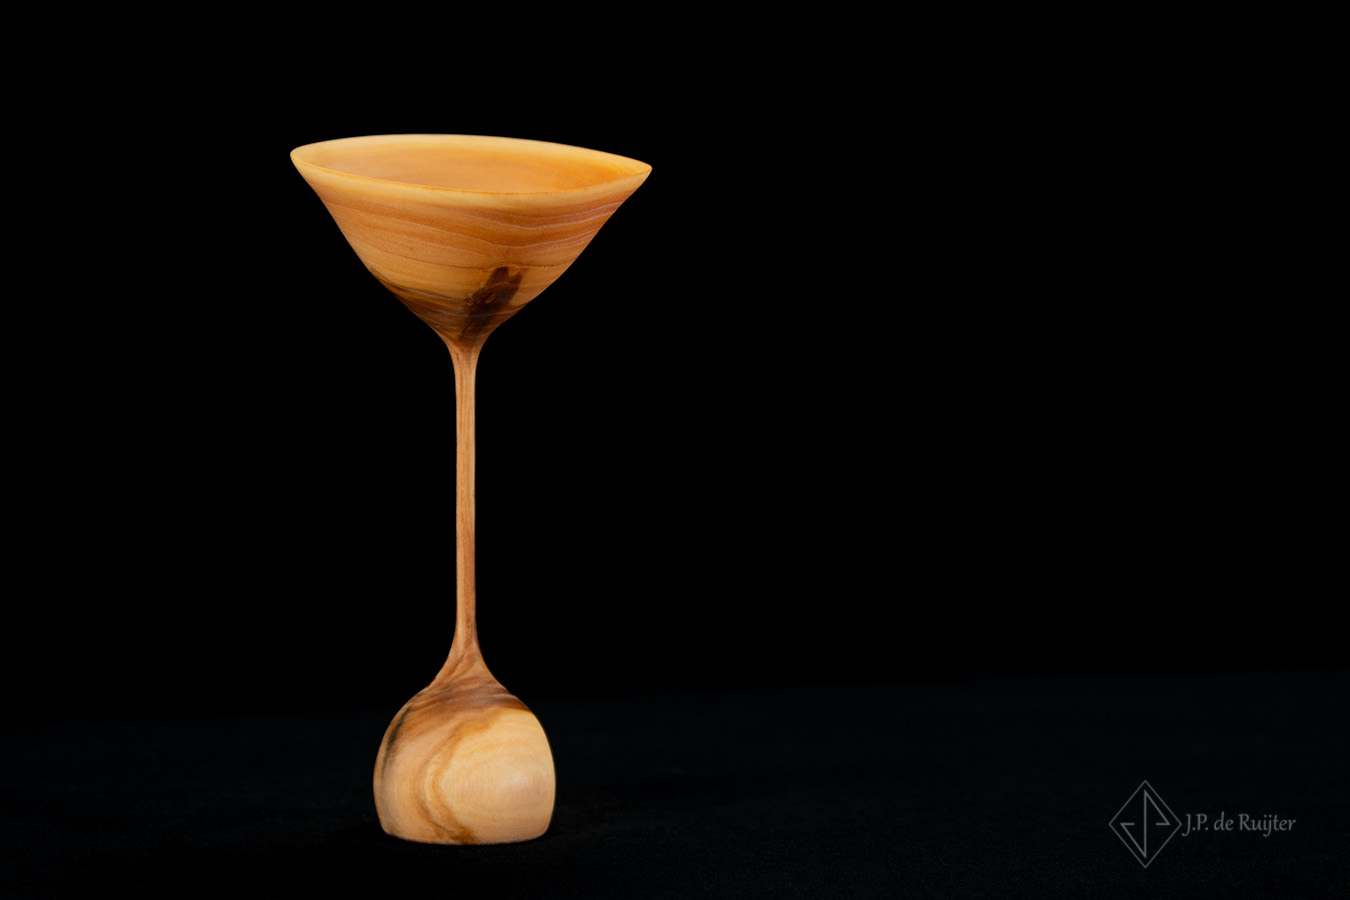 Een ornament van hout, elegant dun in de vorm van een bloem, waarvan de kelk lijkt op een coctail glas.